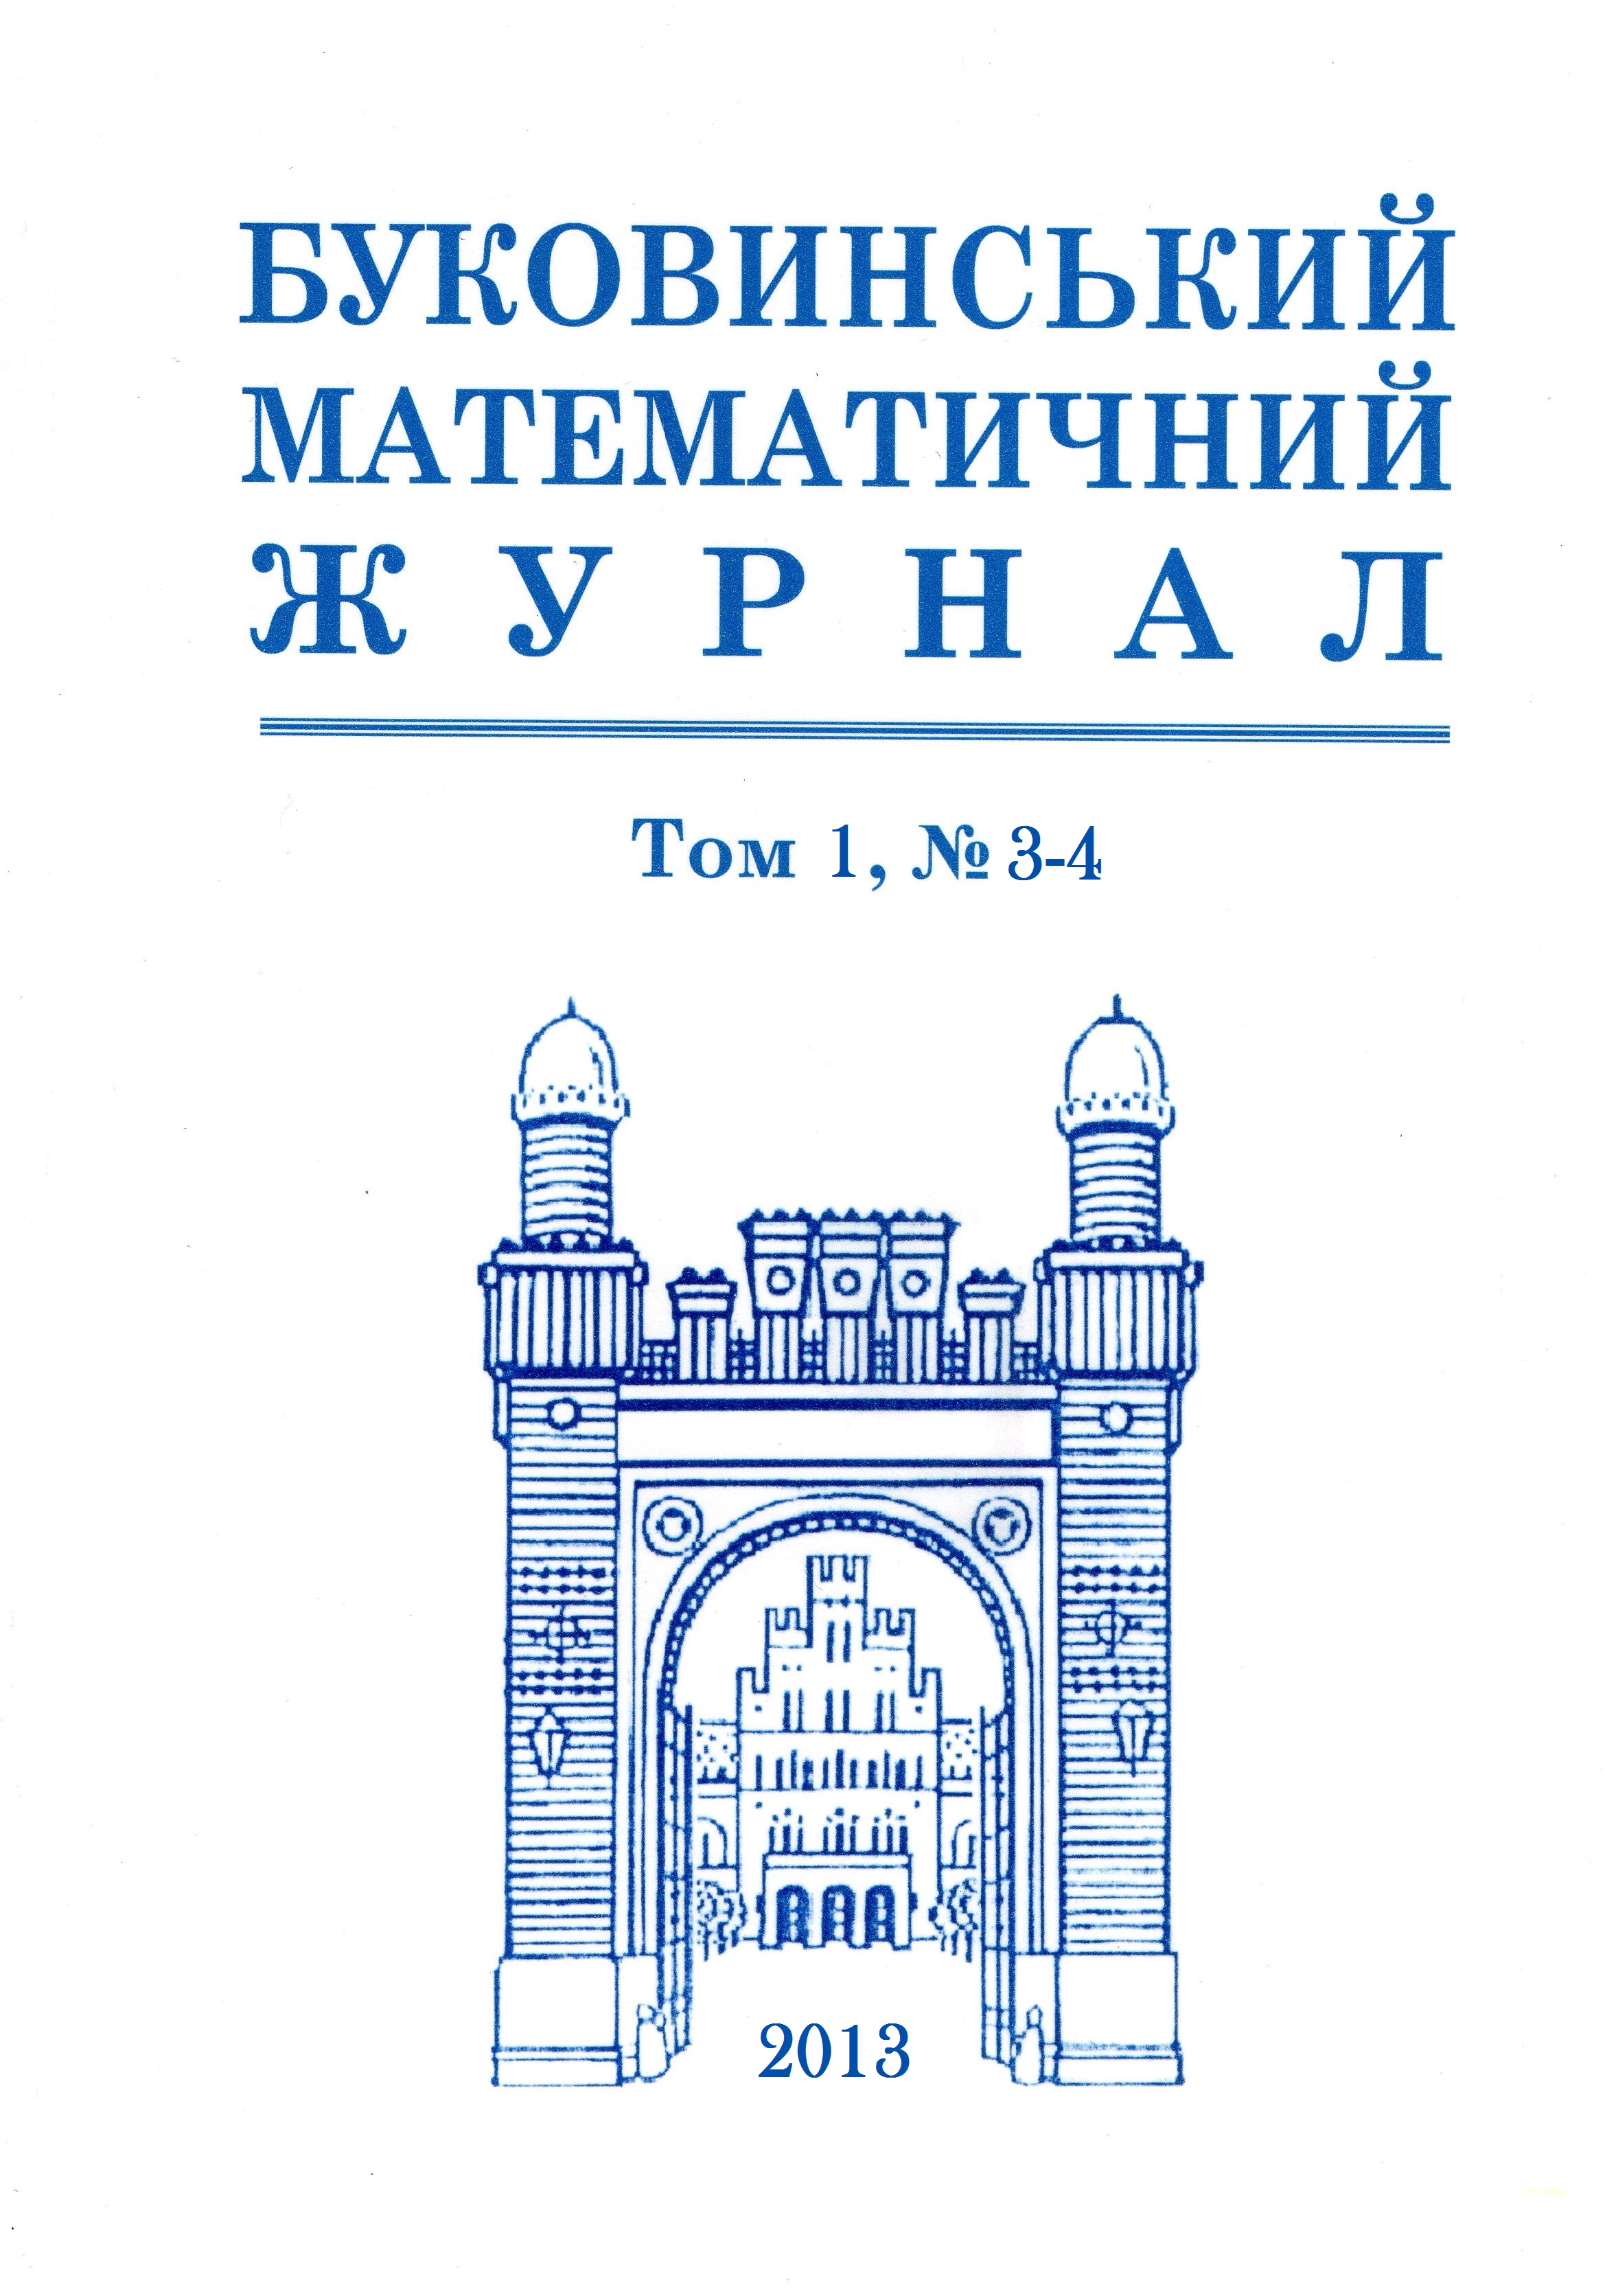 Буковинський математичний журнал. 2013 рік. Том 1, № 3-4